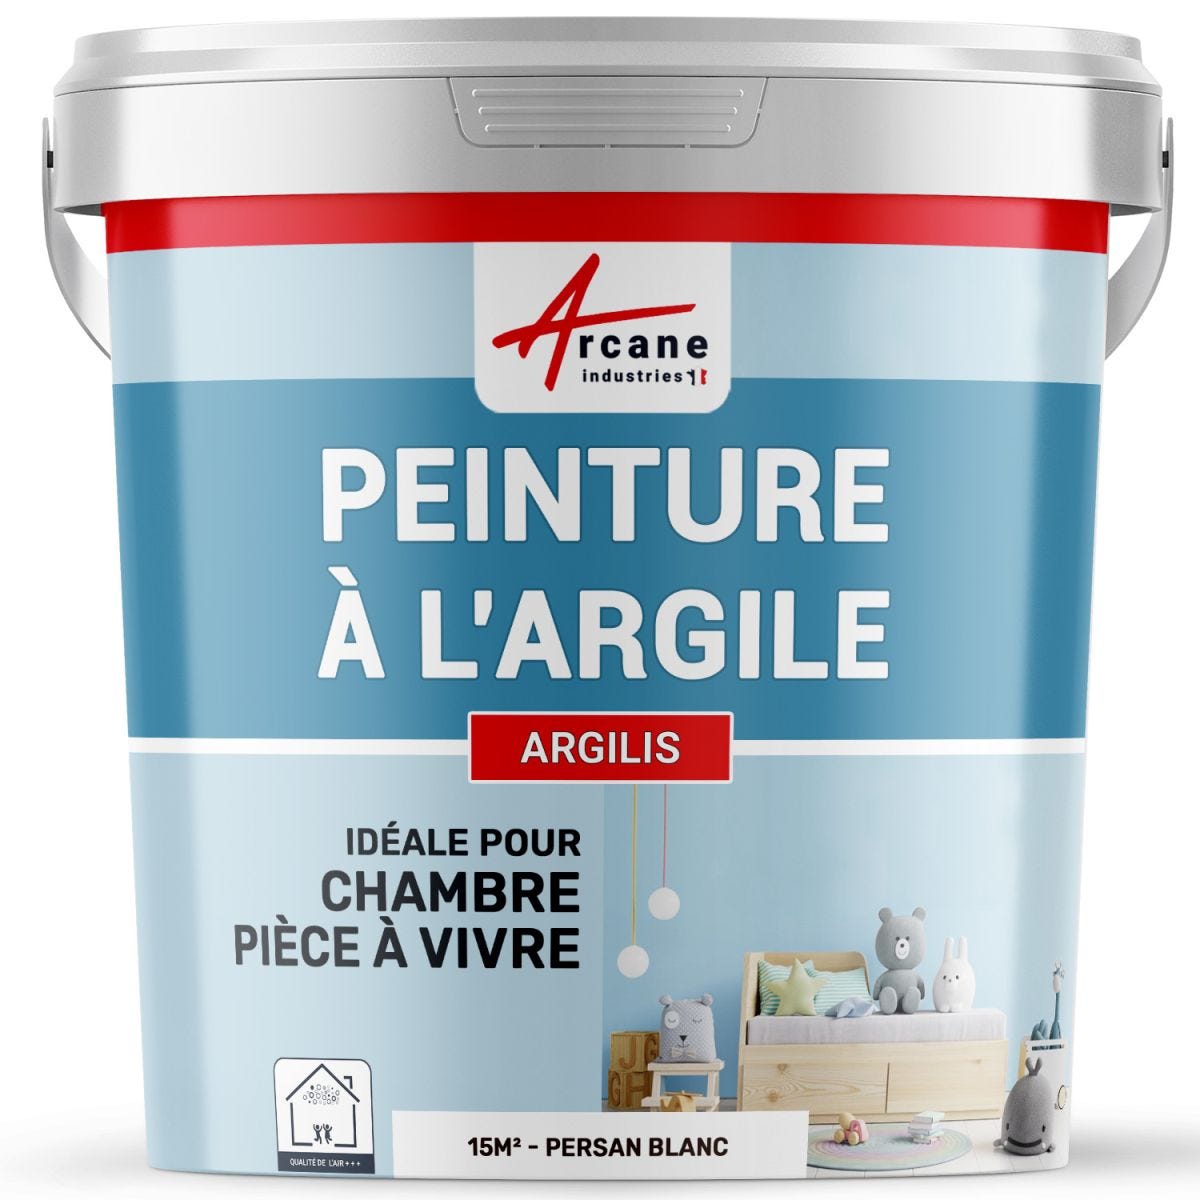 PEINTURE ARGILE naturelle et saine - ARGILIS Persan Blanc - 15 m² (2.5 kg en 1 couche)ARCANE INDUSTRIES 4